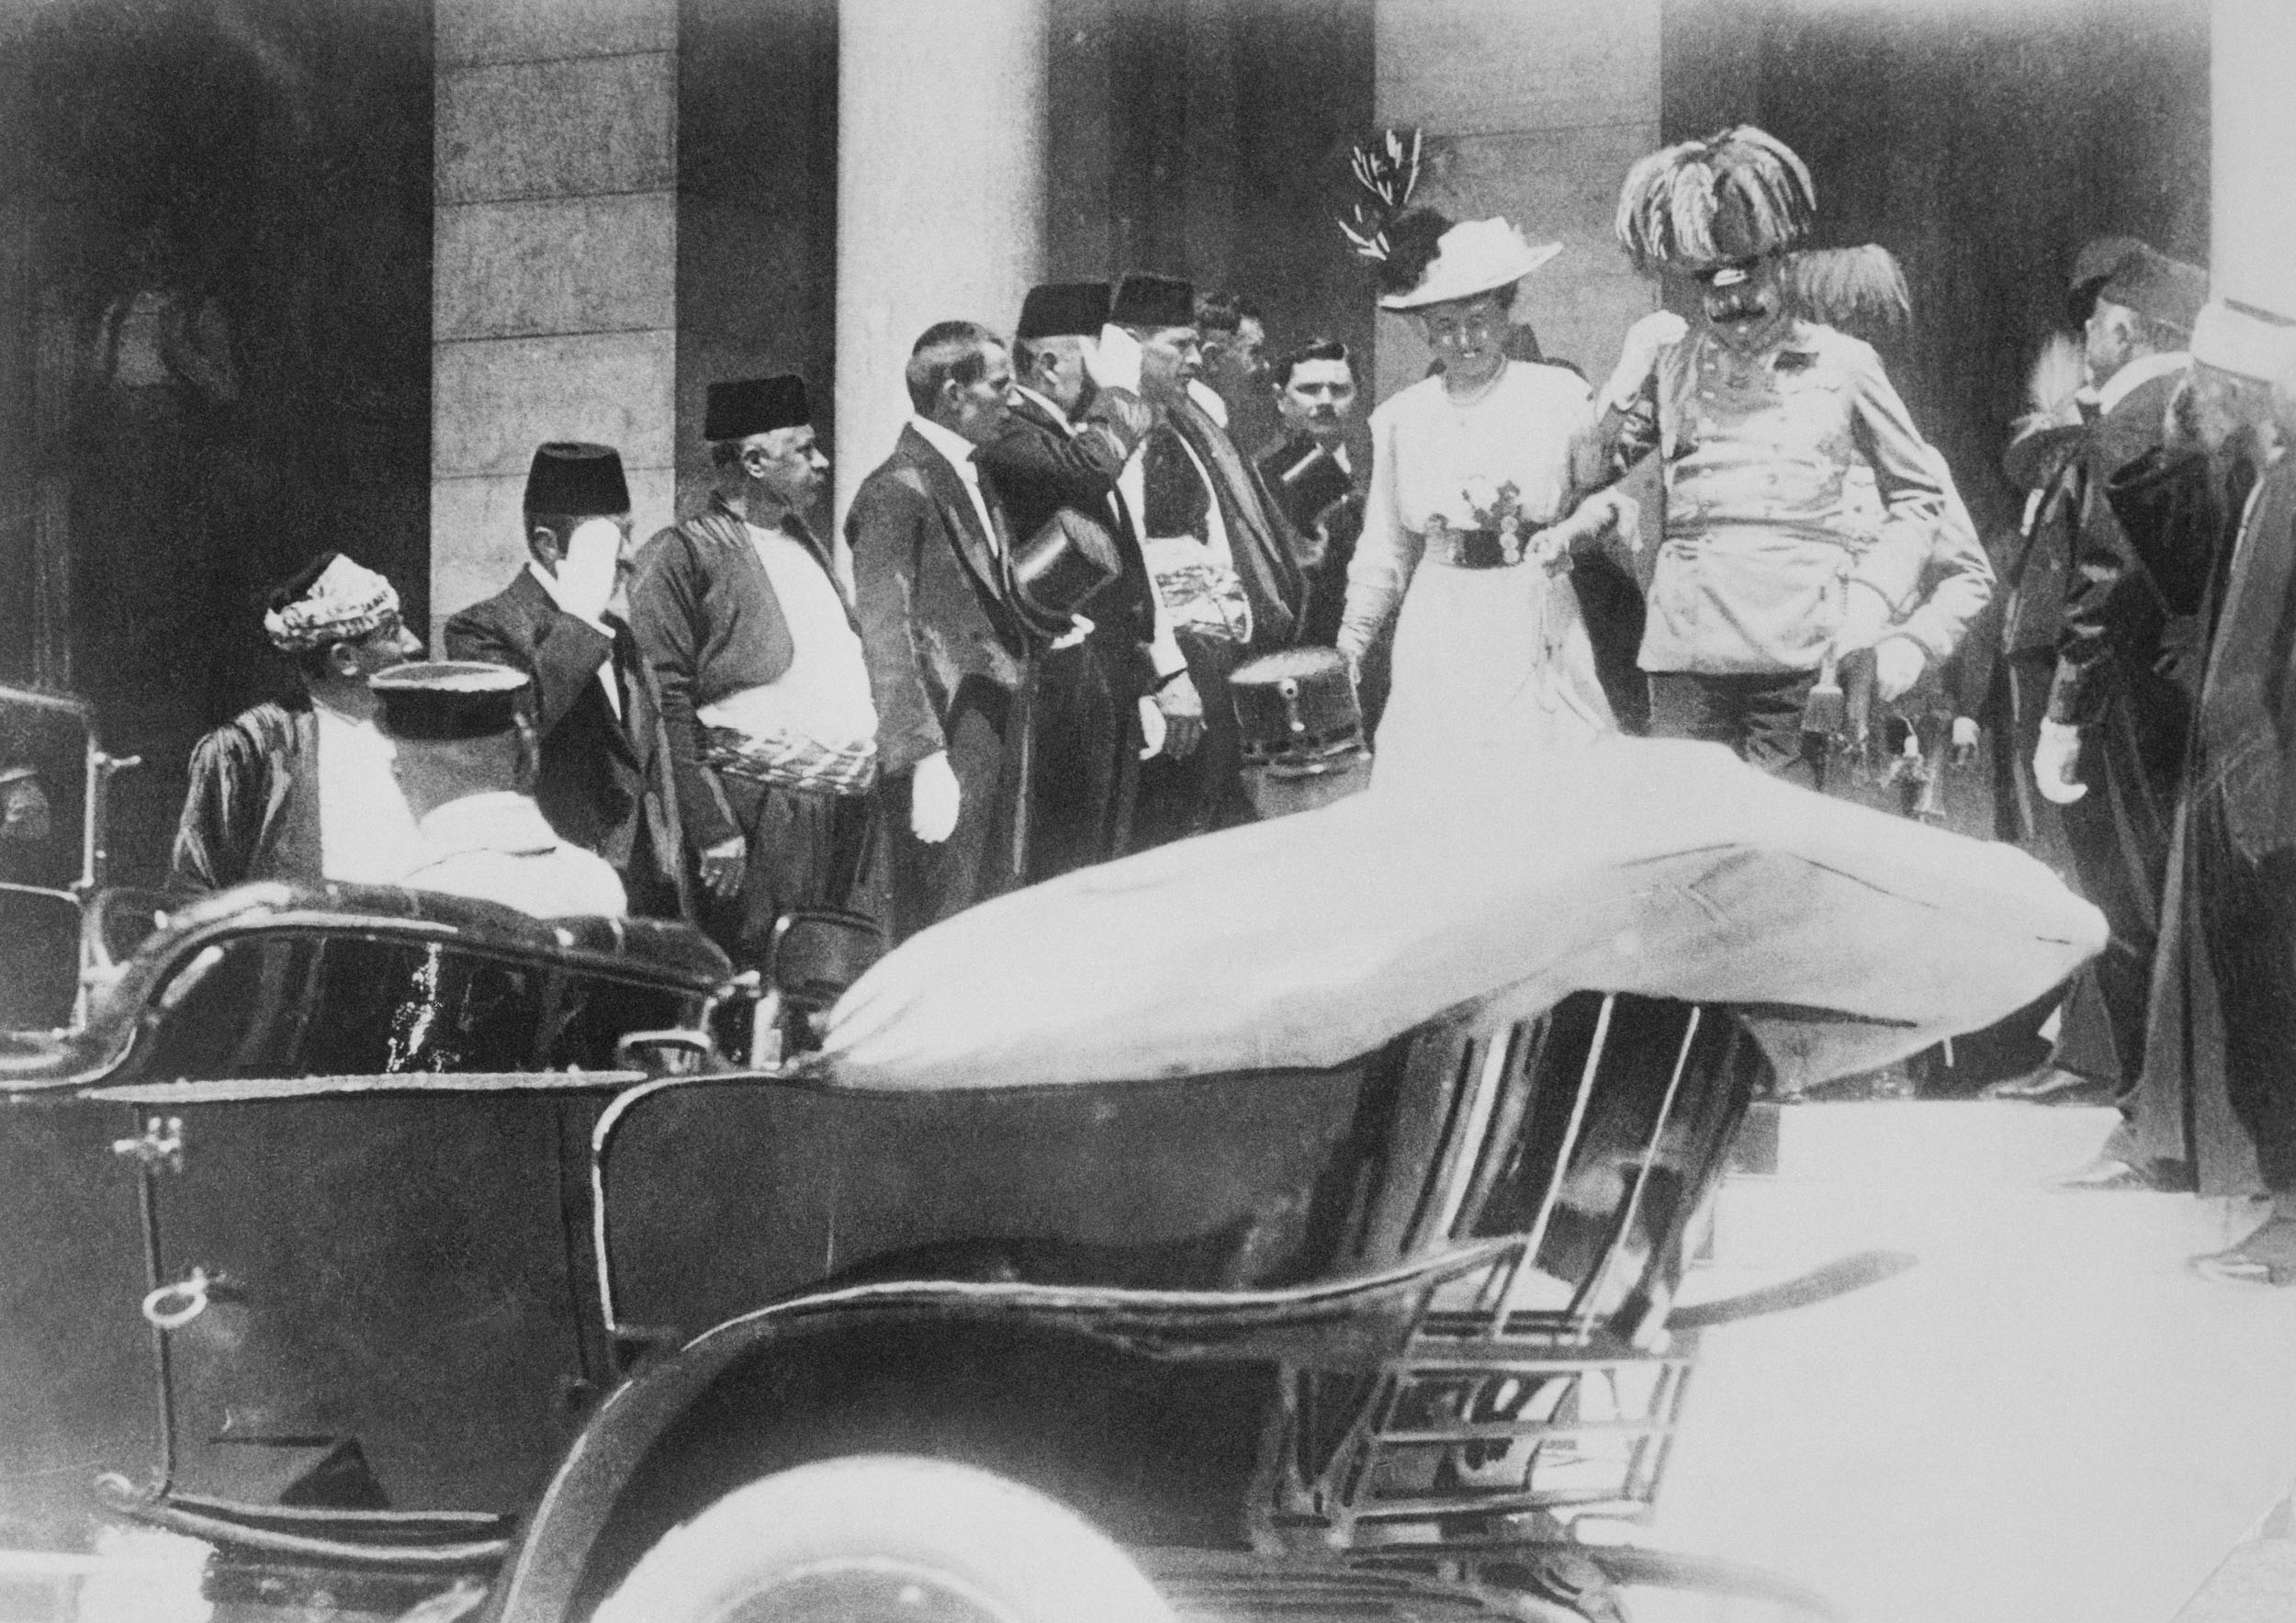 Archduke Franz Ferdinand and Sophie